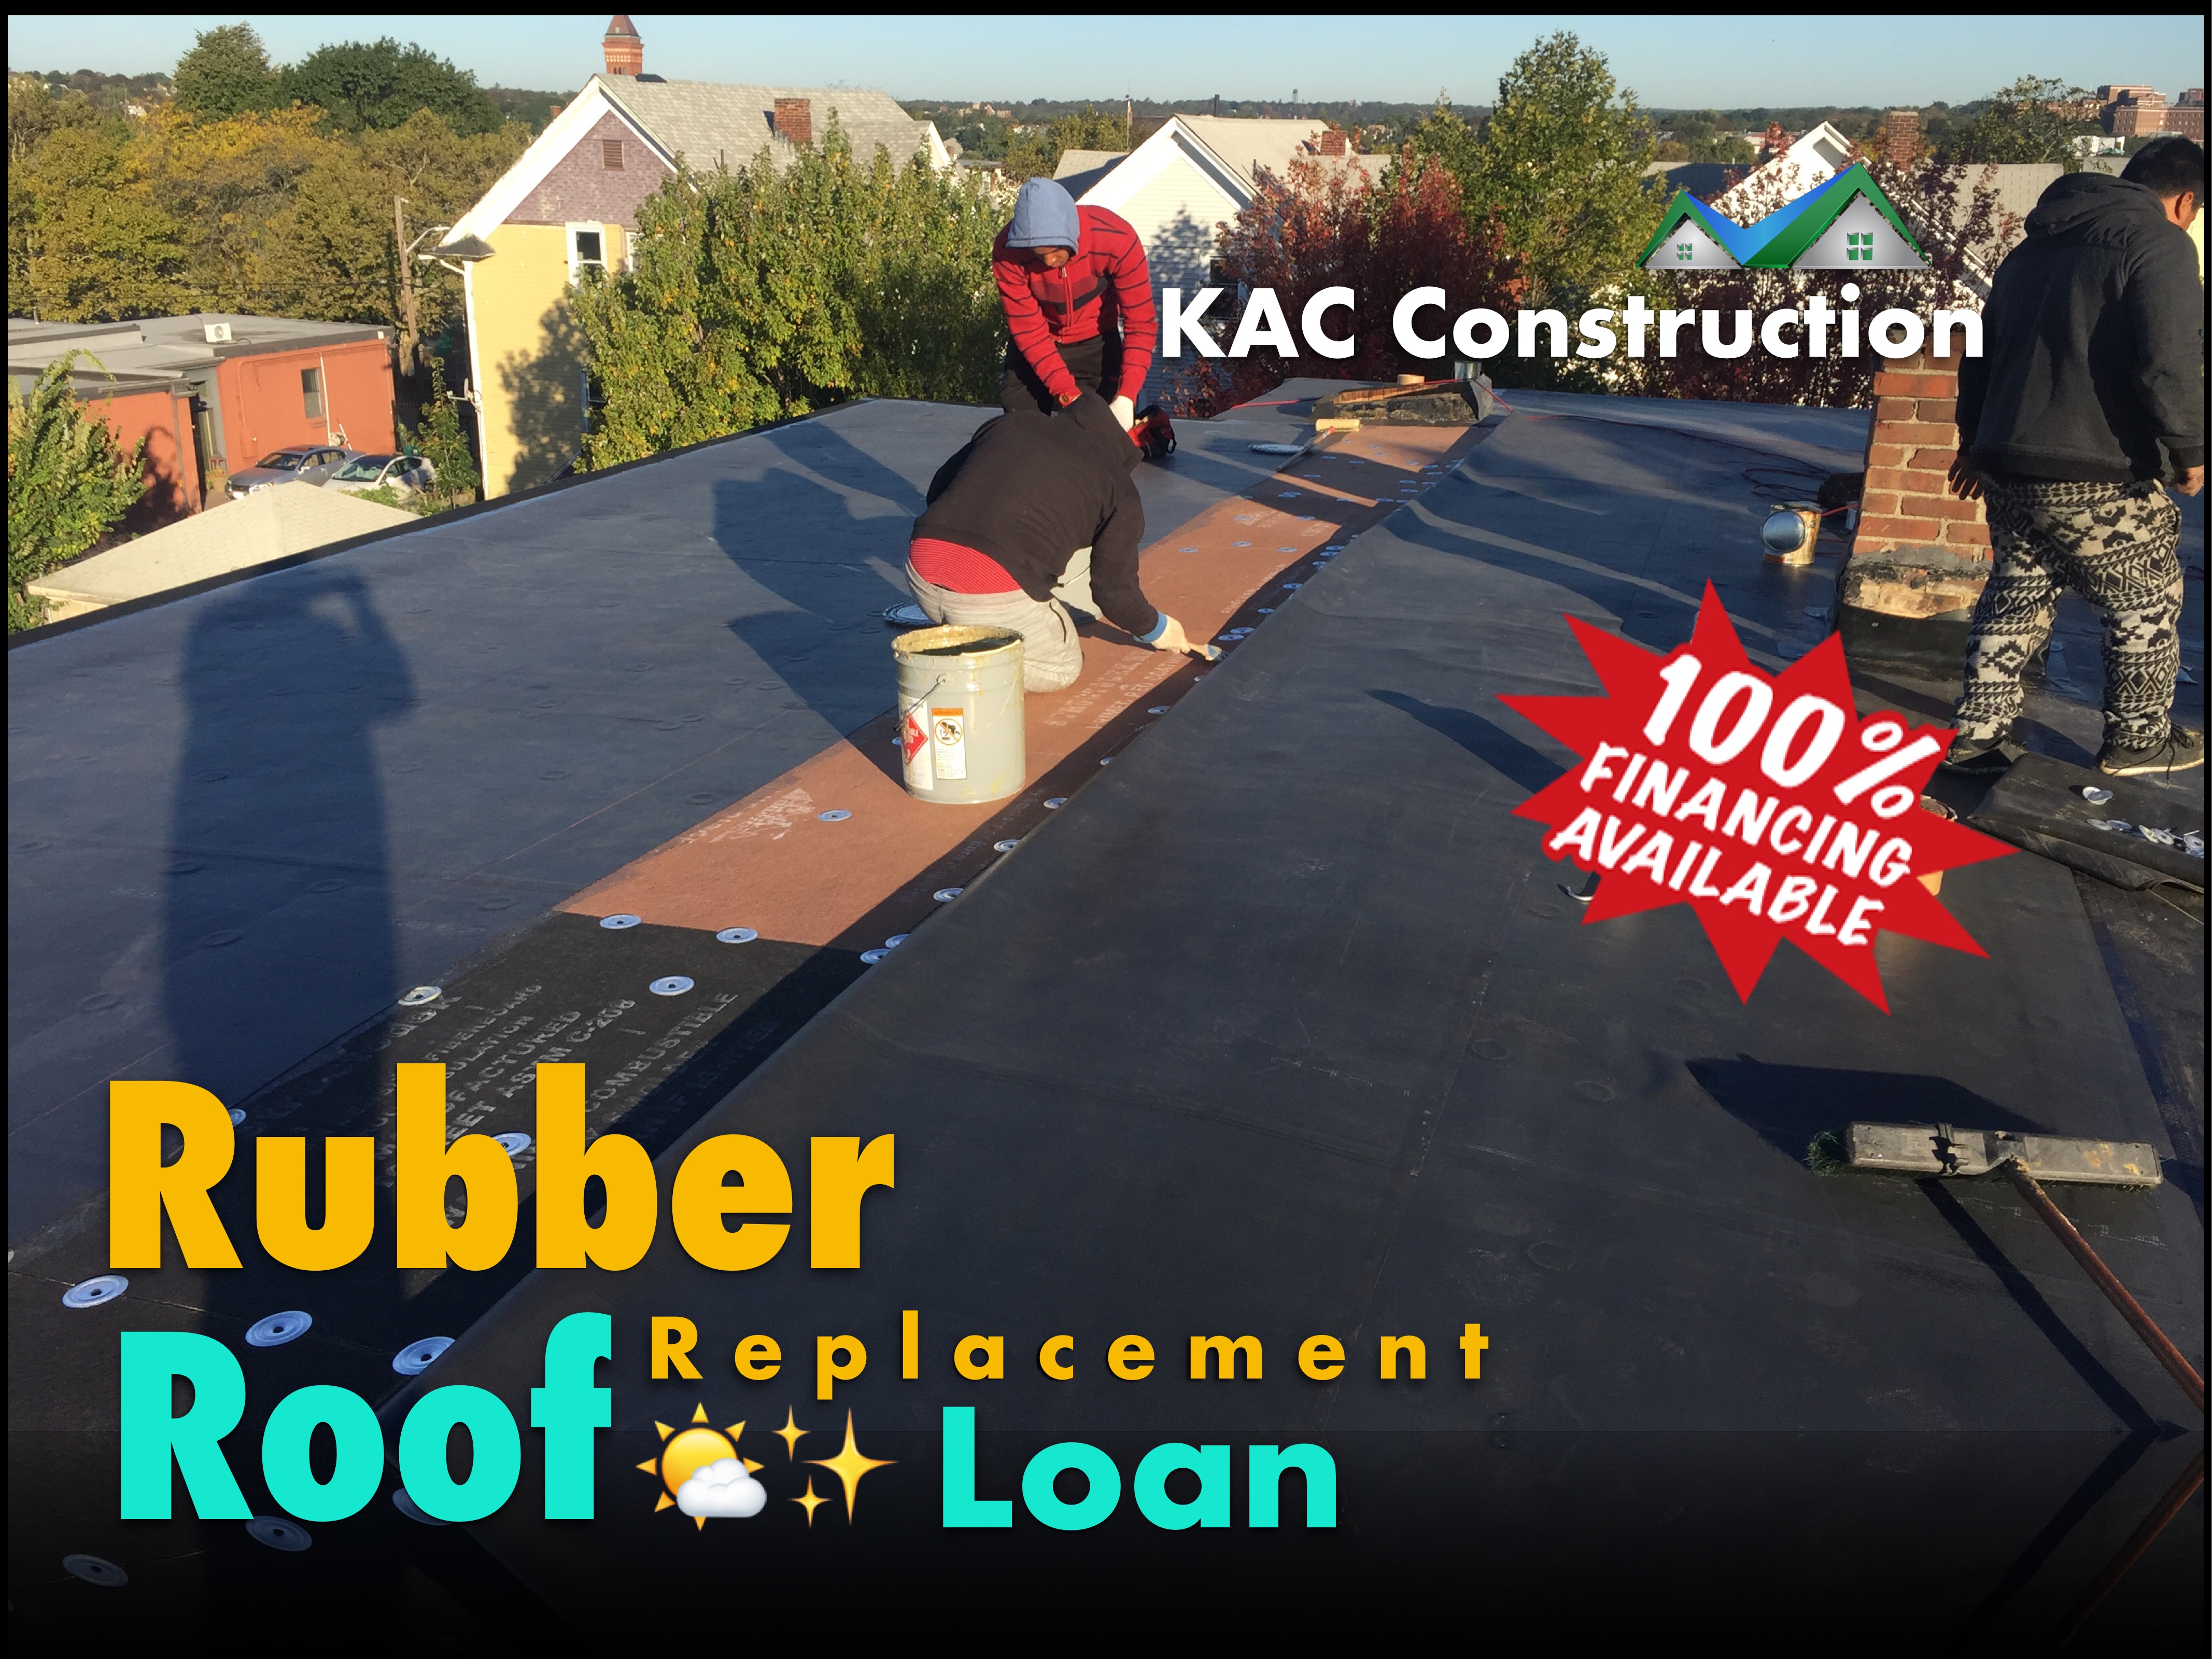 Rubber roof, rubber roof ri, rubber roof loan, rubber roof Loan ri, rubber roof installation, rubber roof installation ri, rubber roof installation loan, roof installation ri, roof installation Loan ri,